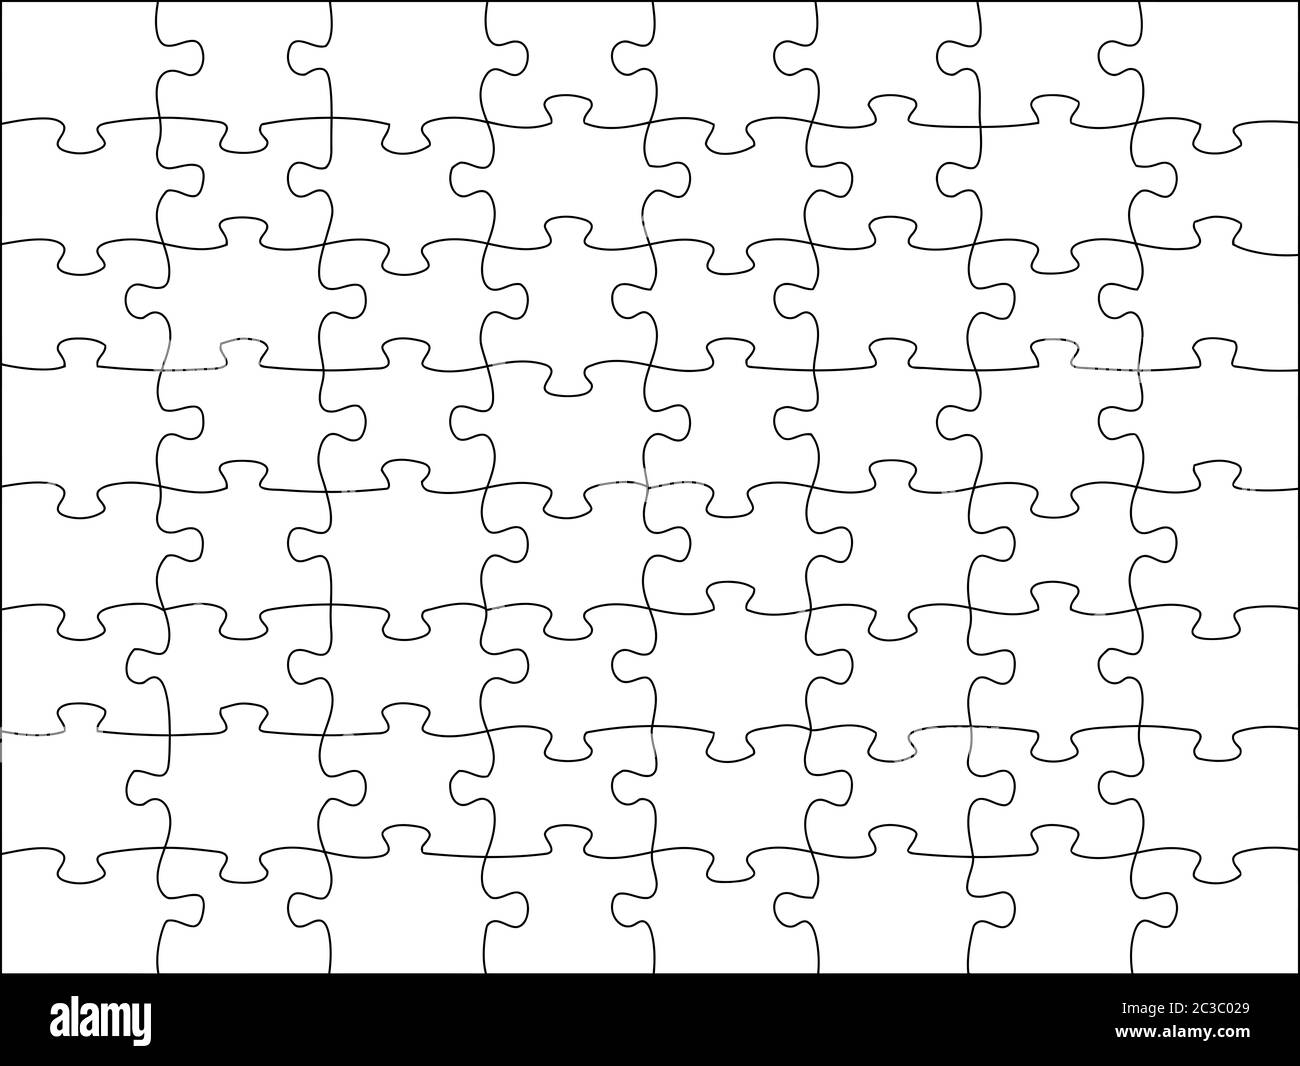 https://c8.alamy.com/comp/2C3C029/jigsaw-piece-puzzle-game-transparent-classic-shape-illustration-cut-2C3C029.jpg